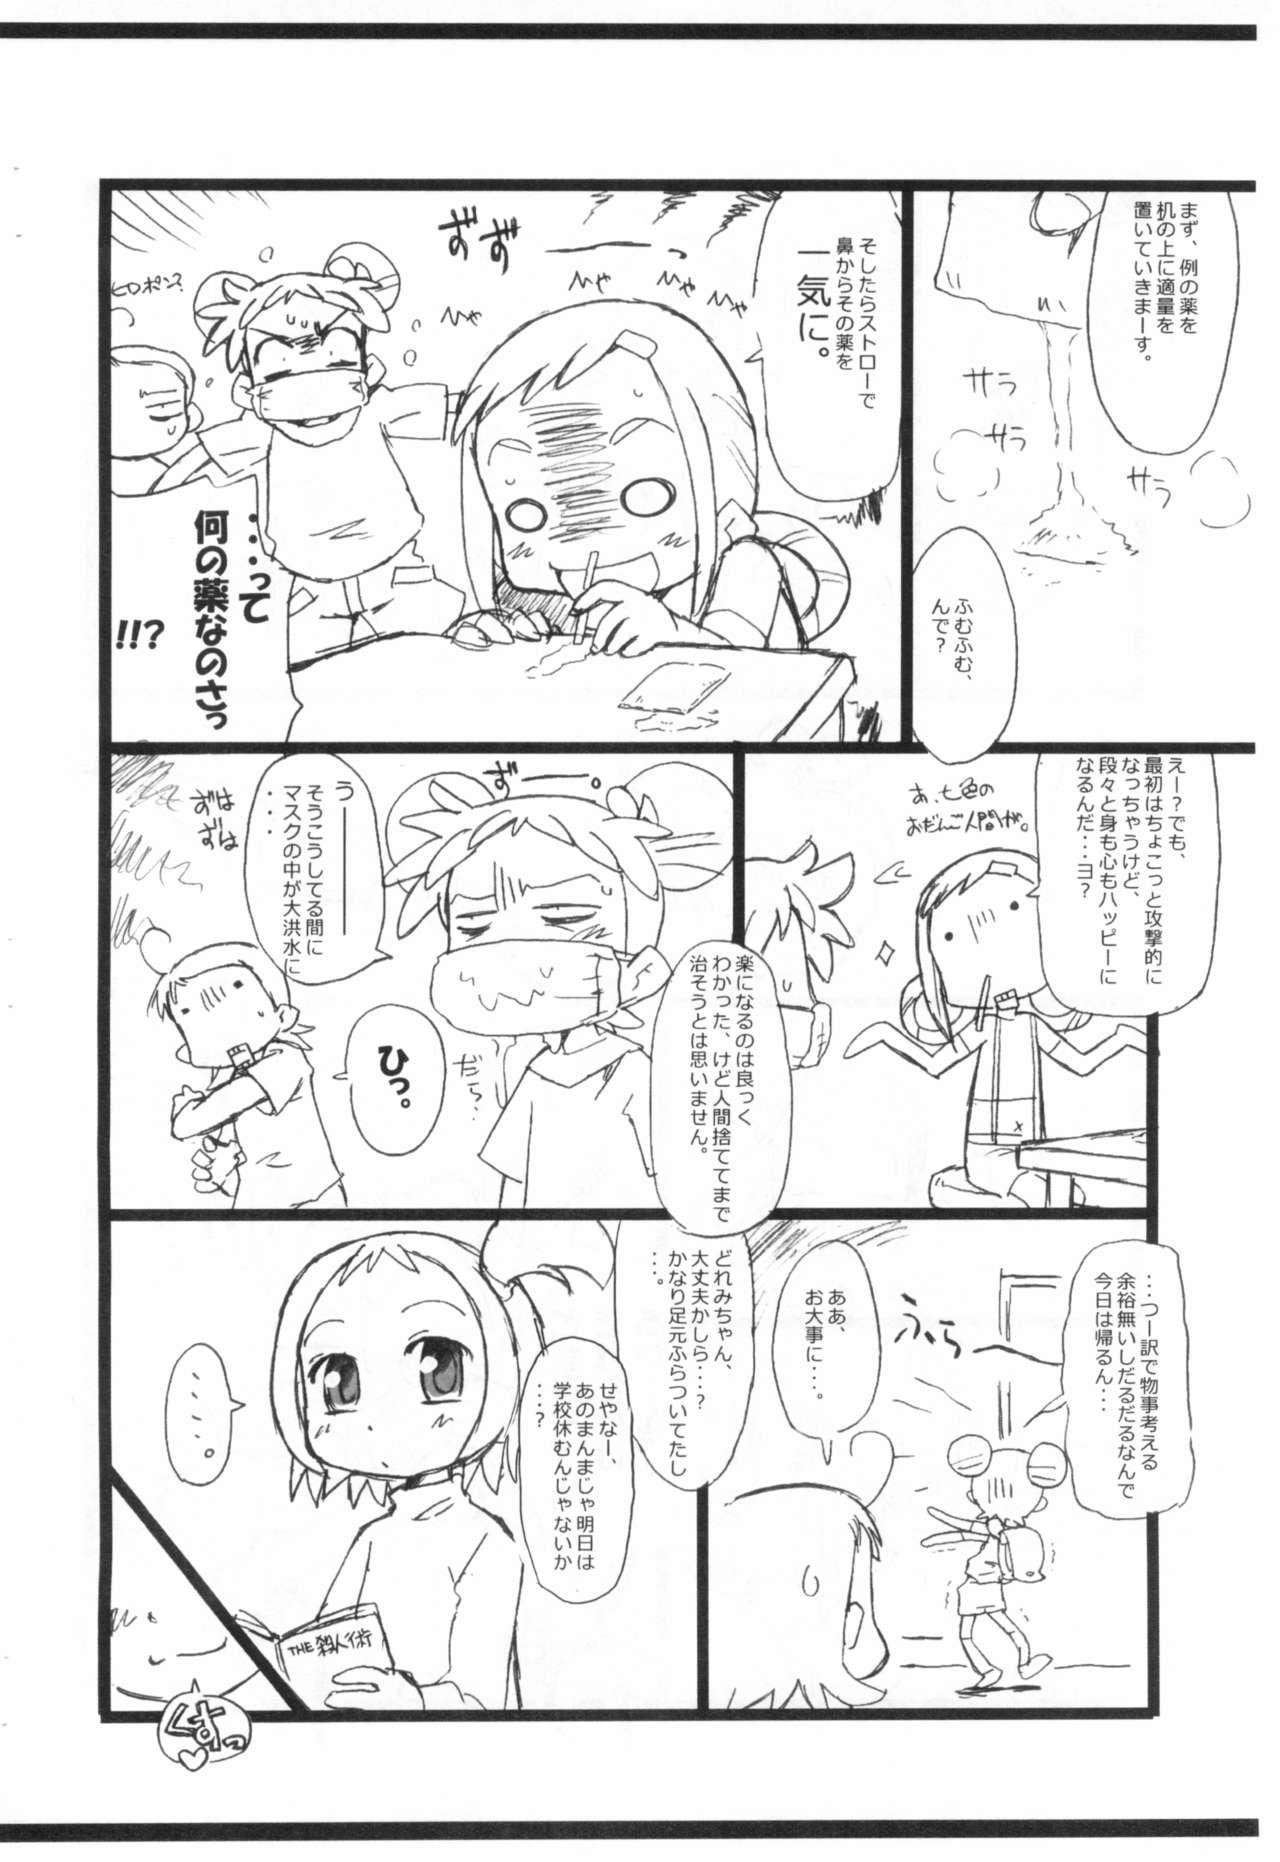 Nuru Kafun to Kiseichuu to Majo Minarai. - Ojamajo doremi | magical doremi Hooker - Page 6